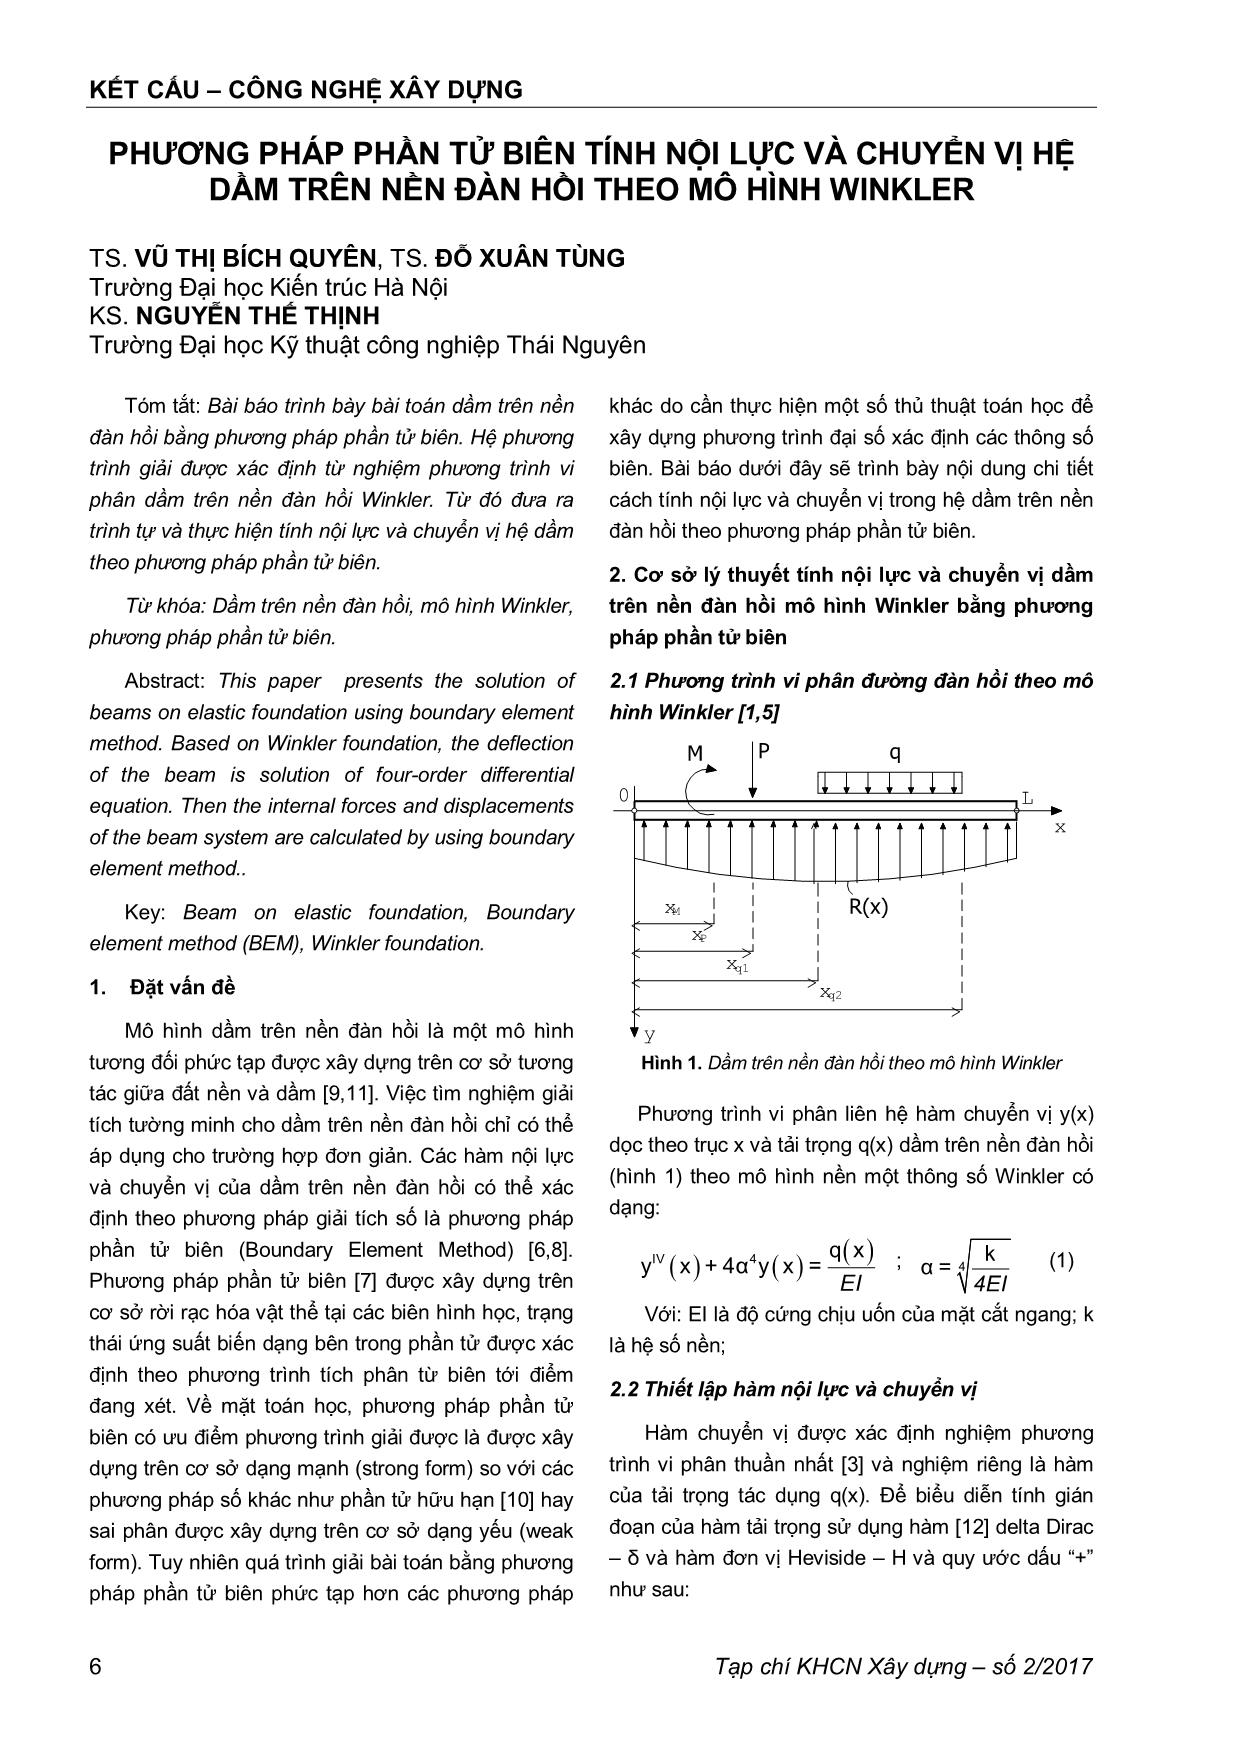 Phương pháp phần tử biên tính nội lực và chuyển vị hệ dầm trên nền đàn hồi theo mô hình Winkler trang 1